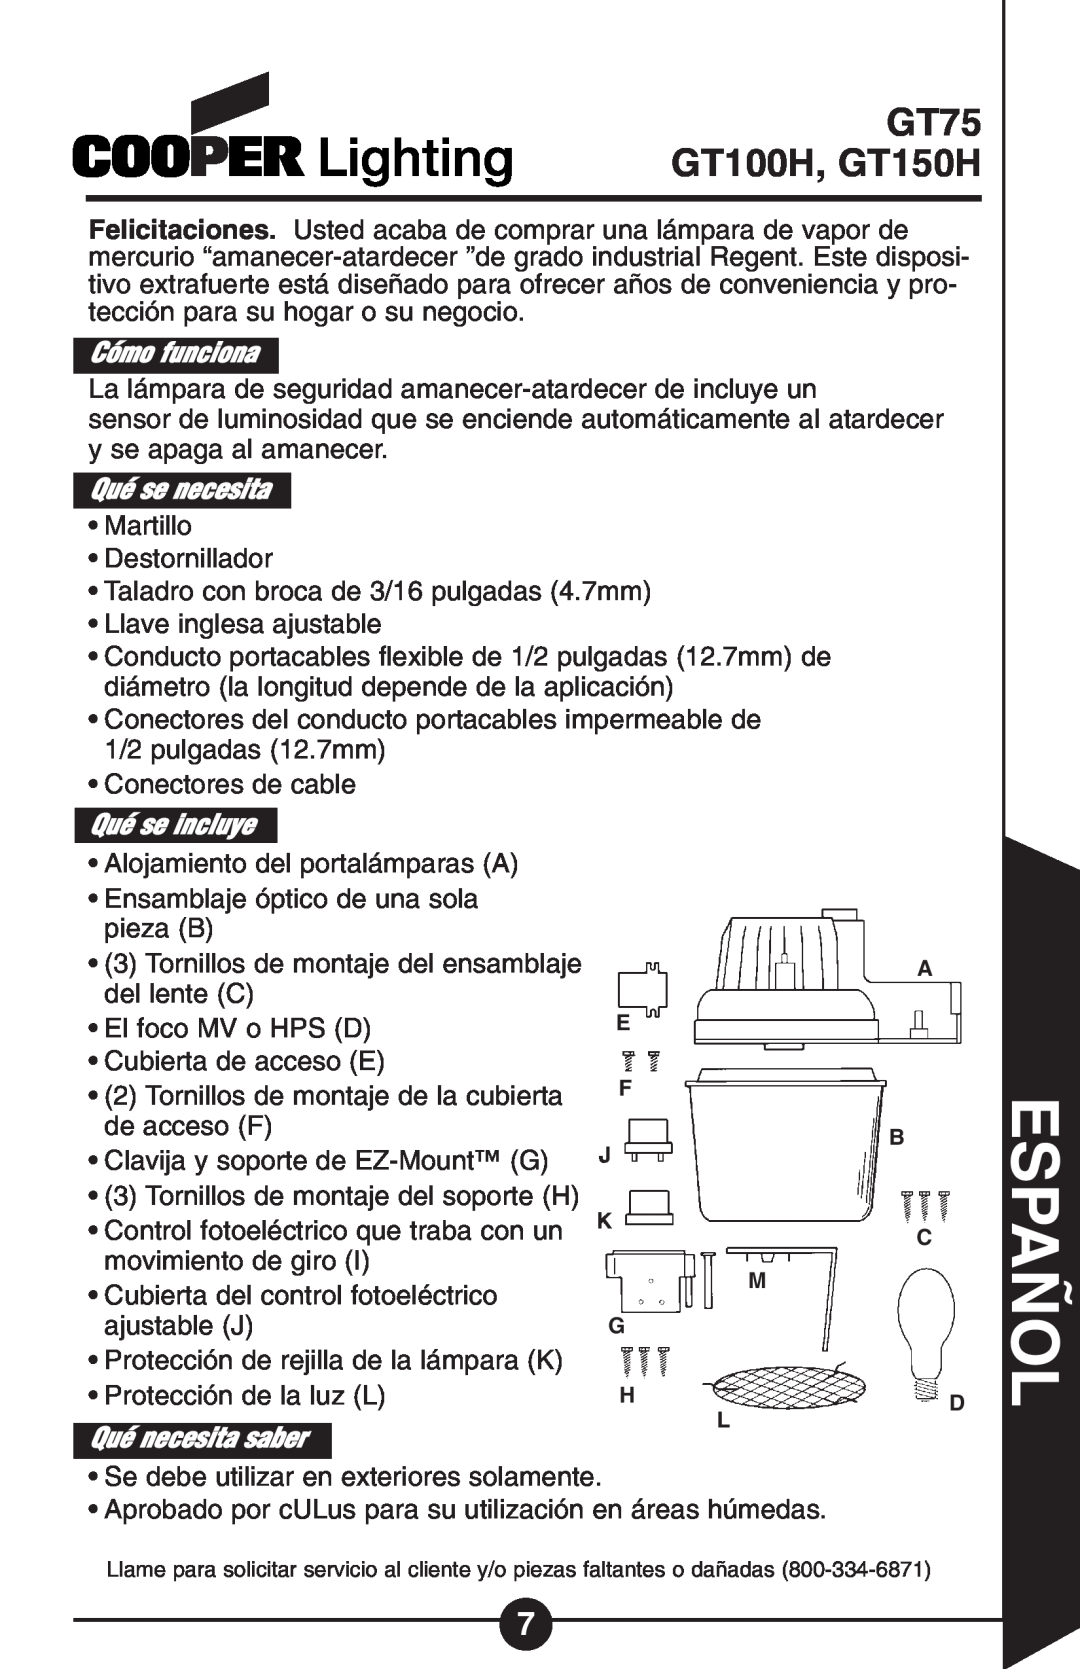 Cooper Lighting GT Series Español, Cómo funciona, Qué se necesita, Qué se incluye, Qué necesita saber, GT75 GT100H, GT150H 